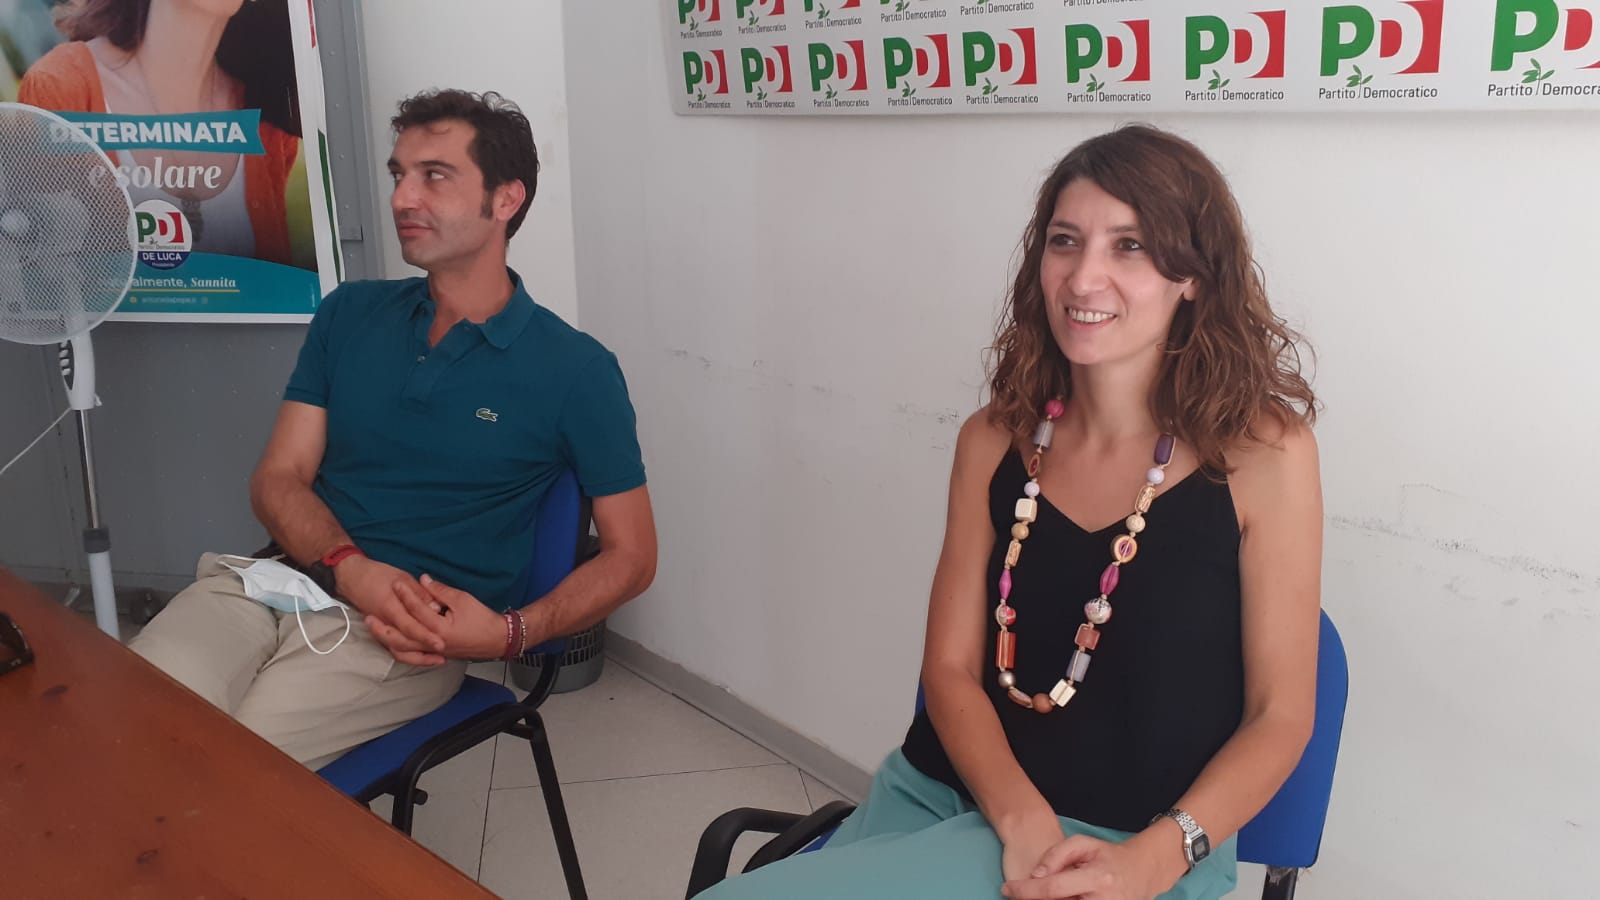 Benevento| Il PD di Mortaruolo e Pepe come “l’araba fenice”